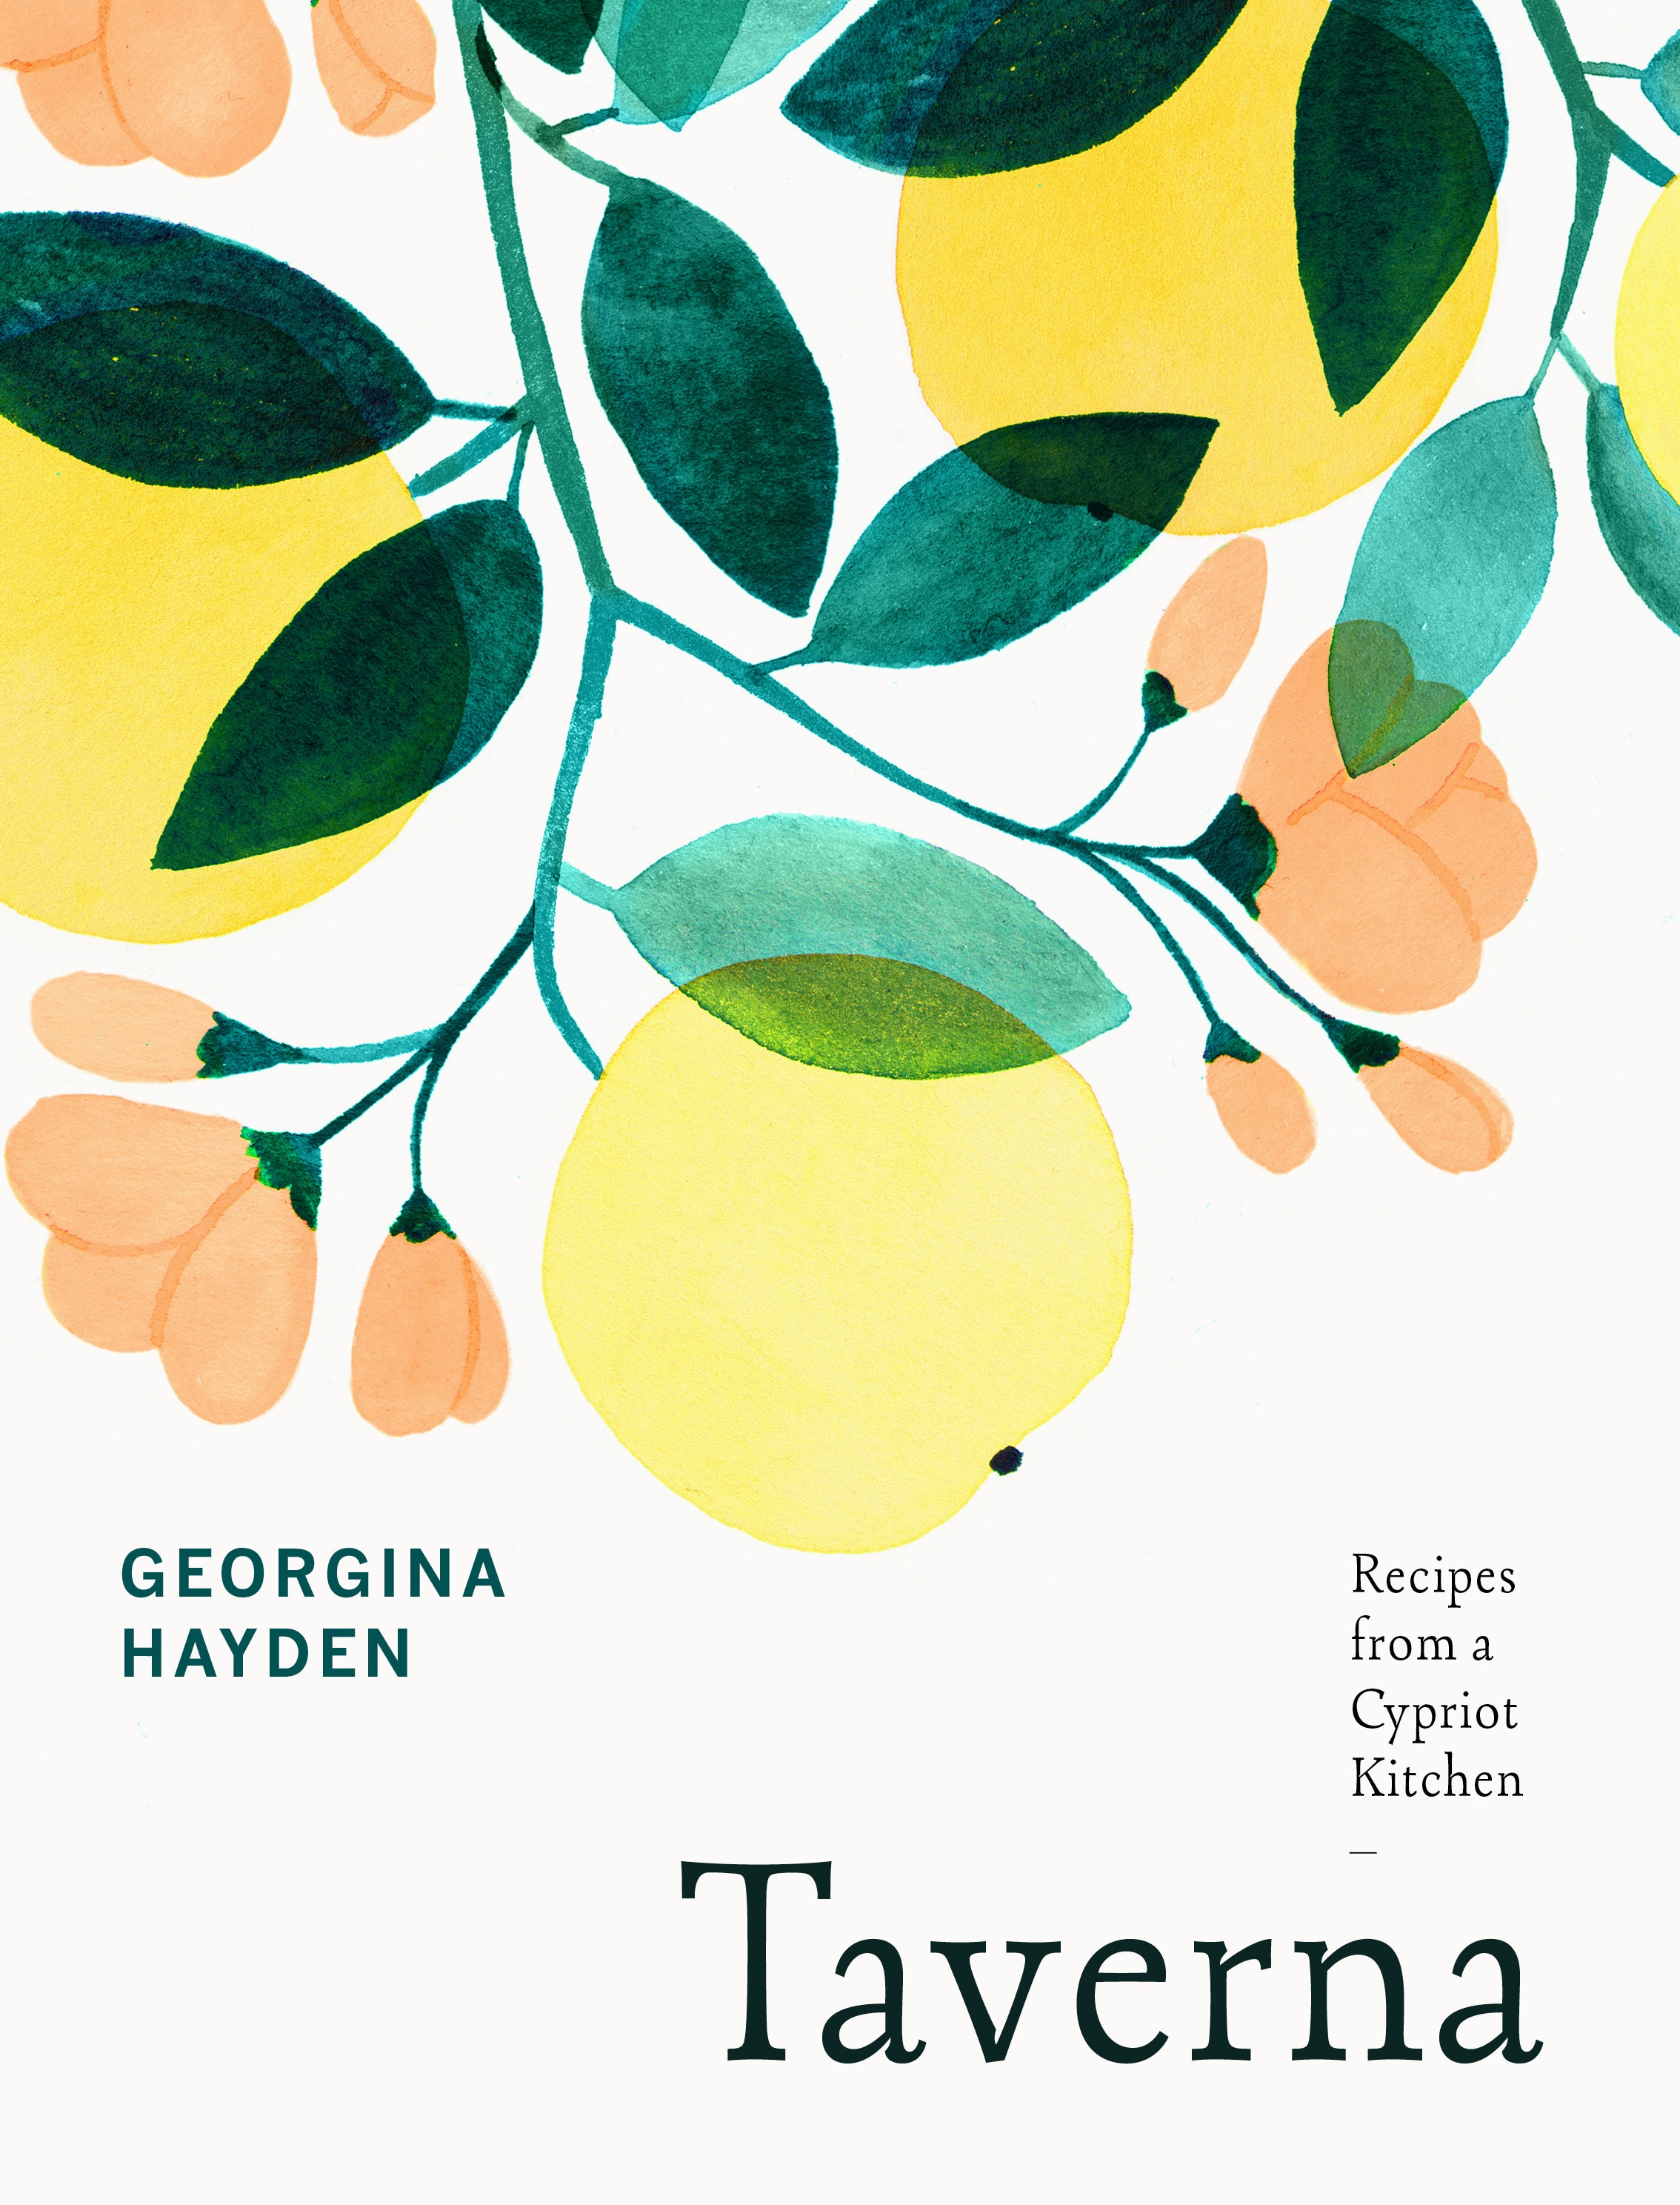 Book “Taverna” by Georgina Hayden — April 4, 2019